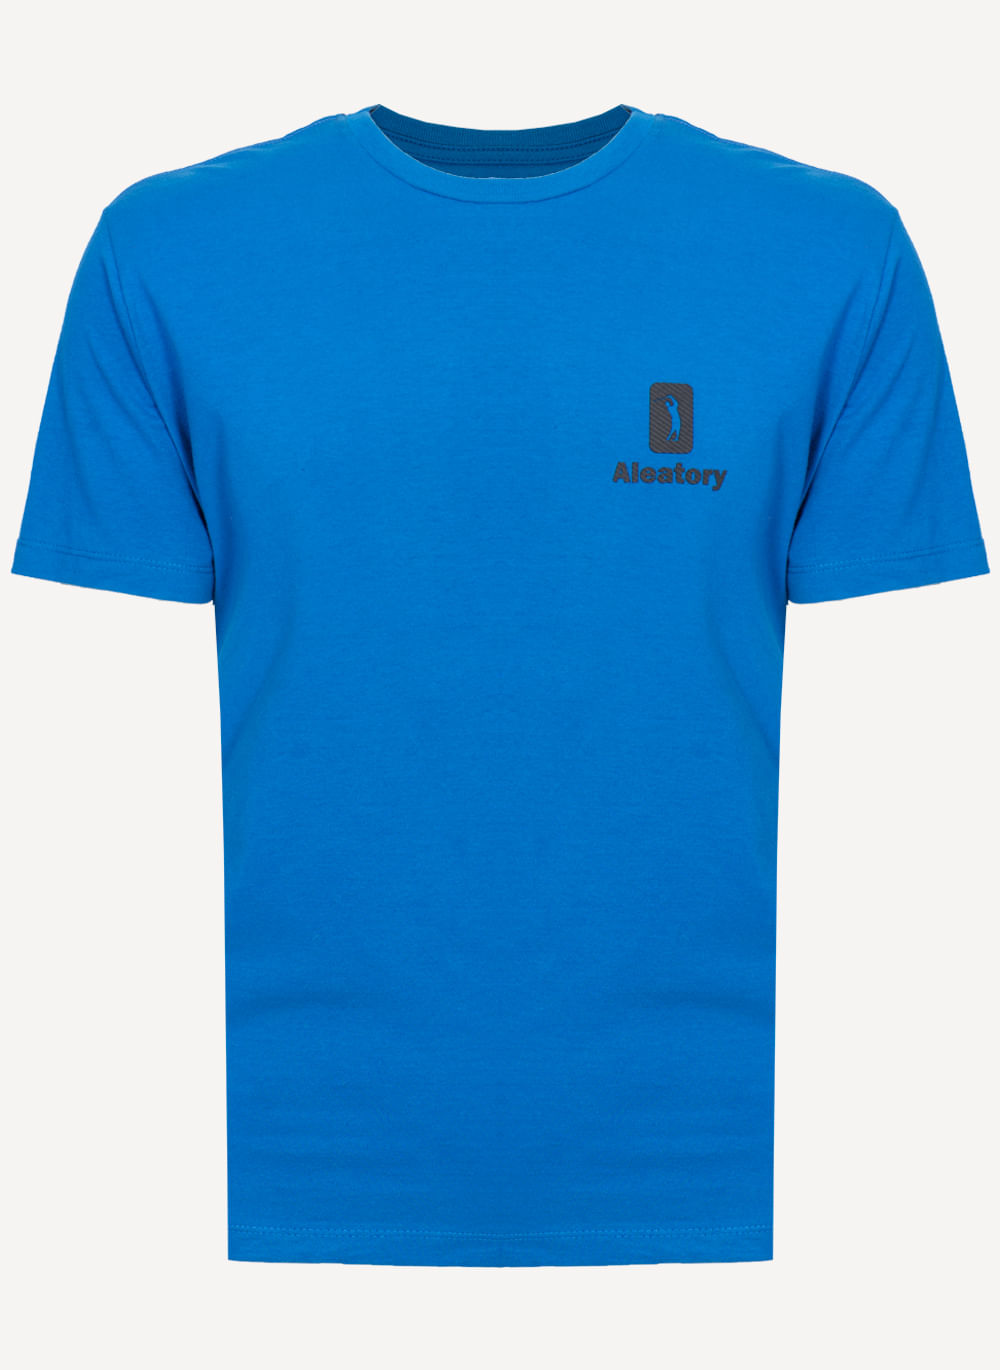 Camiseta-Aleatory-Estampada-Rubber-Azul-Azul-P